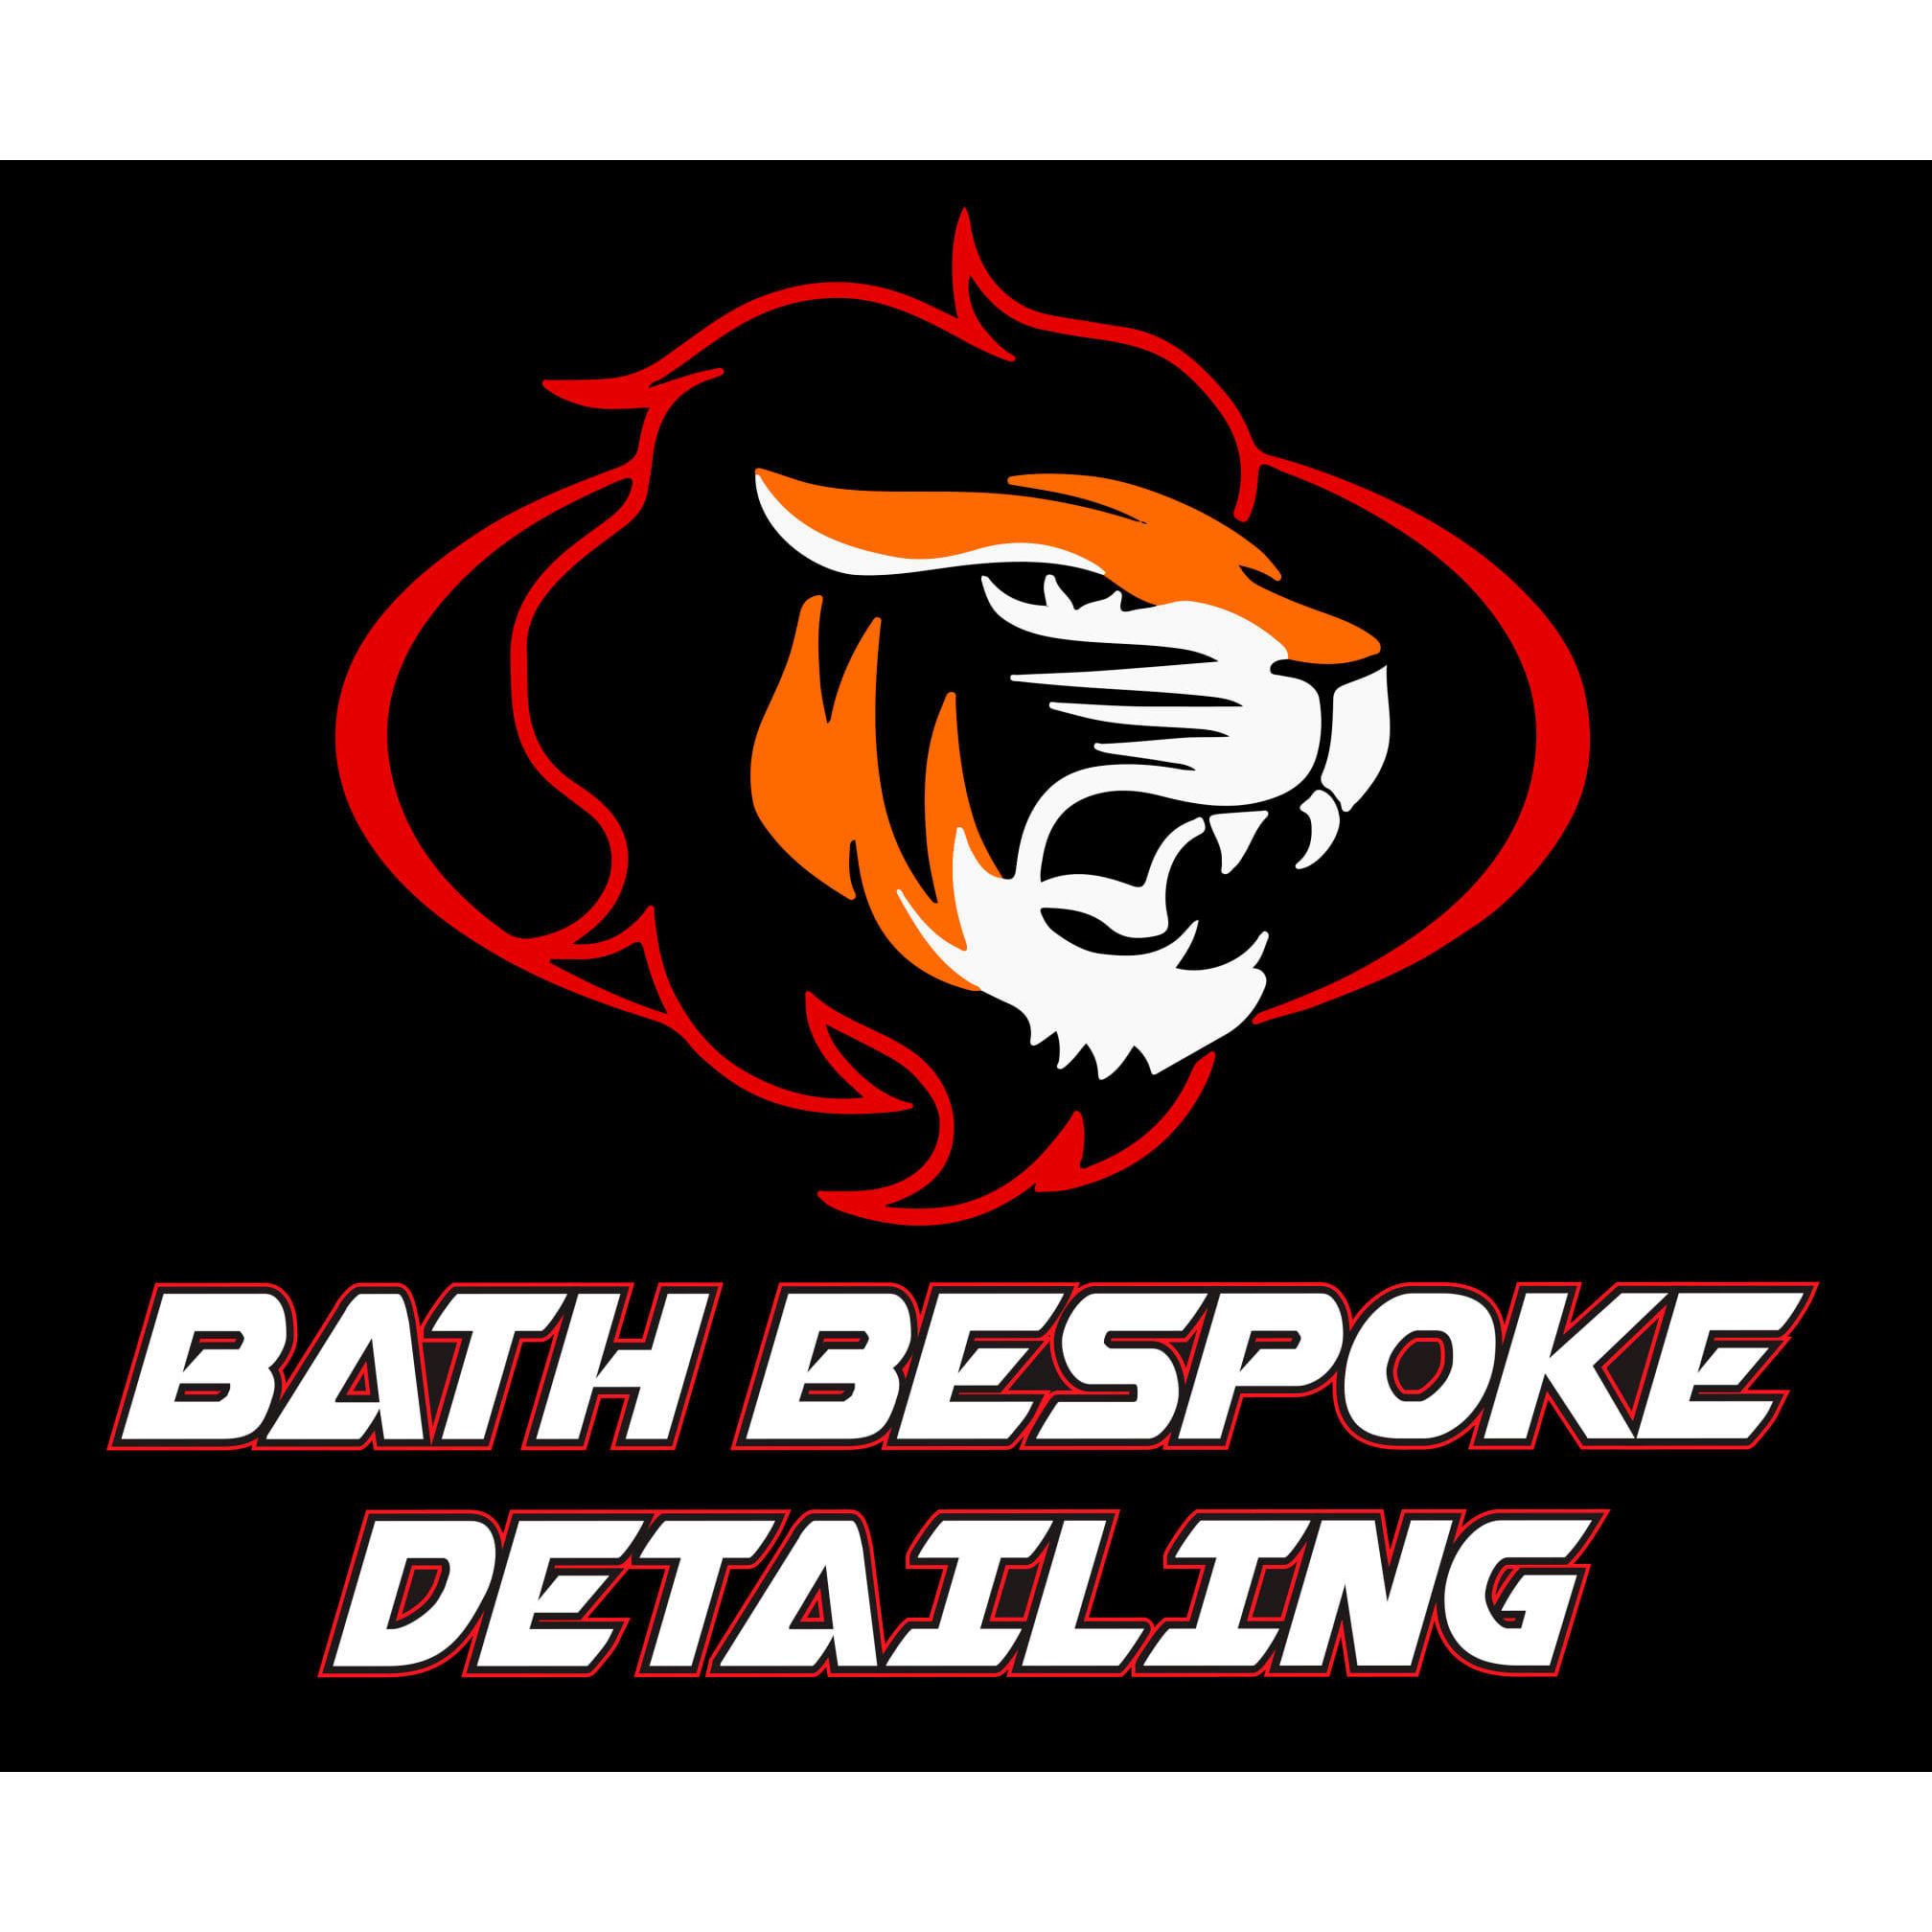 Bath Bespoke Detailing - Bath, Somerset - 07545 525598 | ShowMeLocal.com